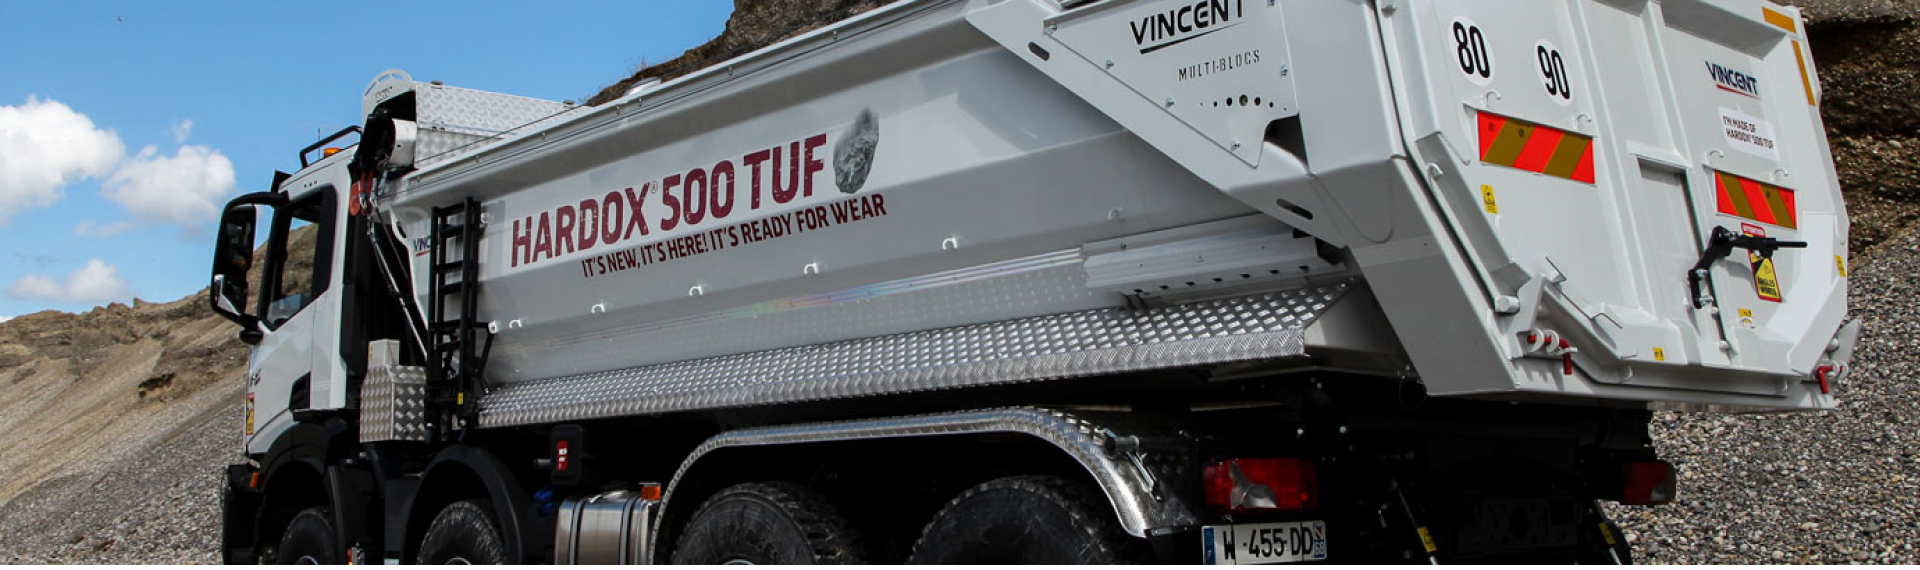 Hardox® 500 Tuf acélból készült billenő felépítménnyel rendelkező teherautó egy építkezésen, a következő felirattal: „It’s New, It’s Here, It’s Ready For Wear!” (Új, itt van, készen a használatra!).  